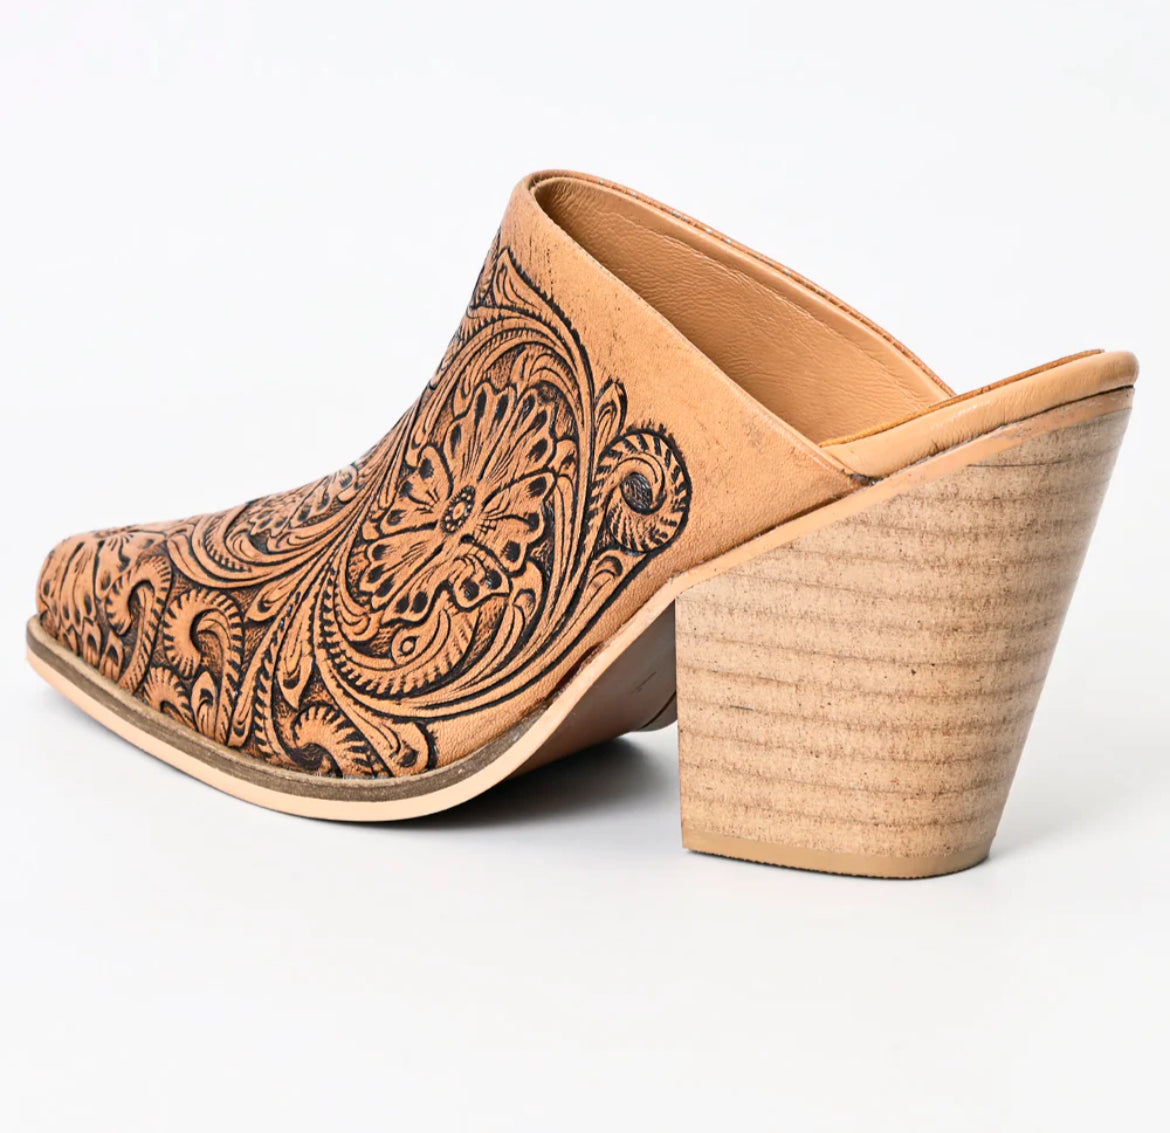 American Darling tooled genuine leather tooled heel booties